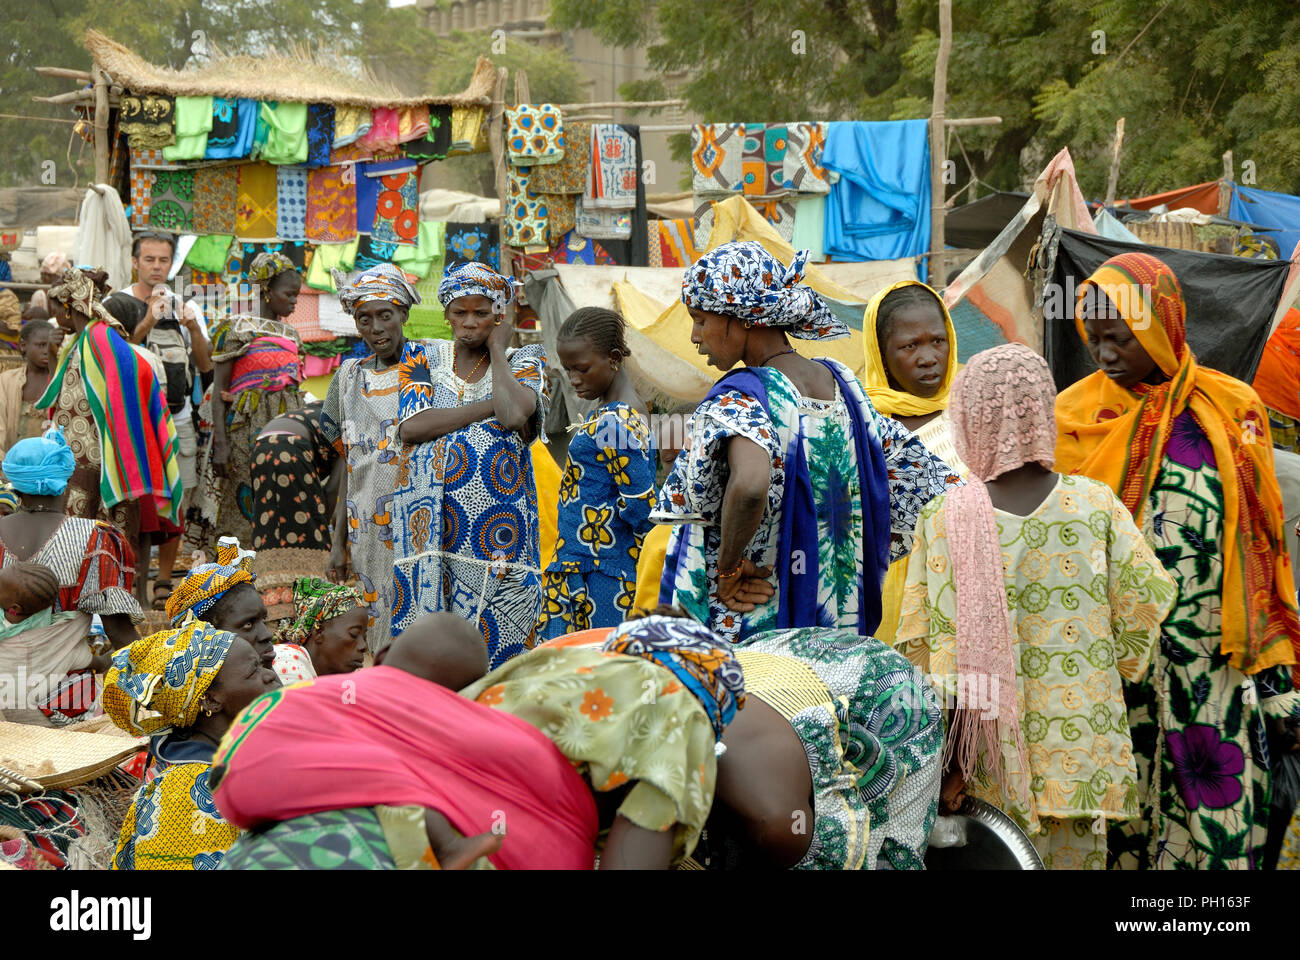 Jour de marché hebdomadaire, le lundi à Djenné, Site du patrimoine mondial de l'Unesco. Le Mali, Afrique de l'Ouest Banque D'Images